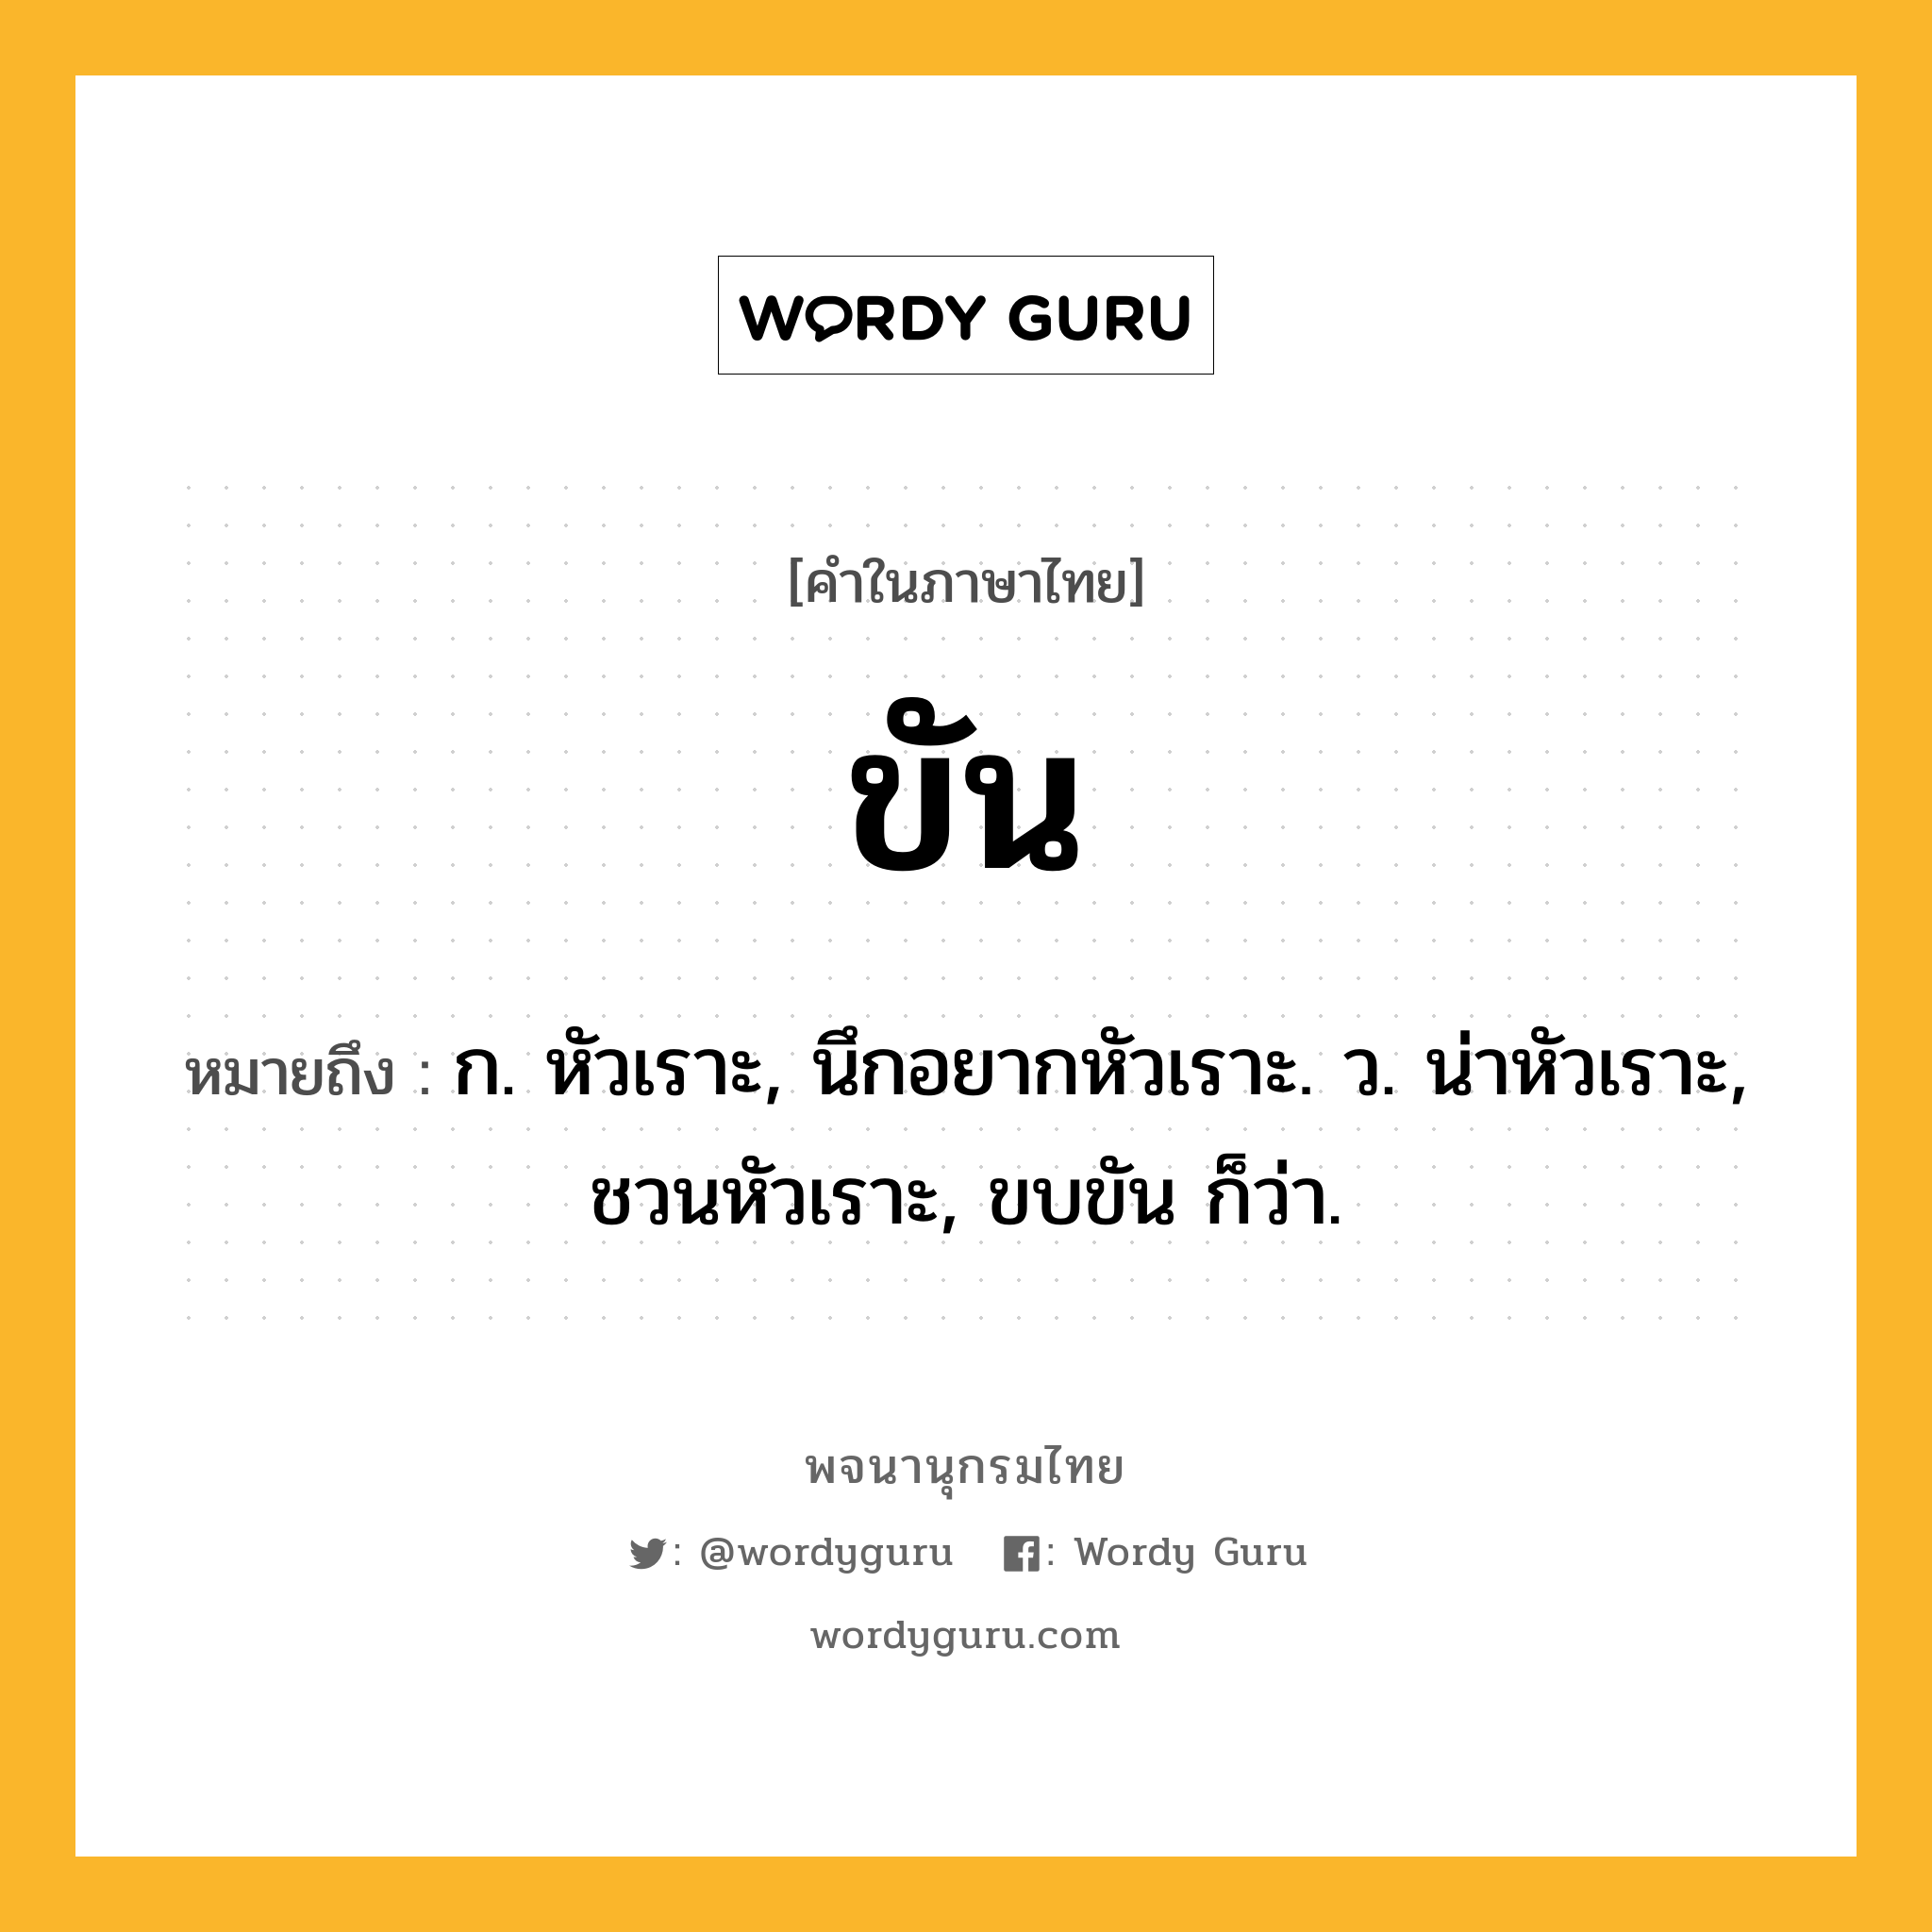 ขัน ความหมาย หมายถึงอะไร?, คำในภาษาไทย ขัน หมายถึง ก. หัวเราะ, นึกอยากหัวเราะ. ว. น่าหัวเราะ, ชวนหัวเราะ, ขบขัน ก็ว่า.